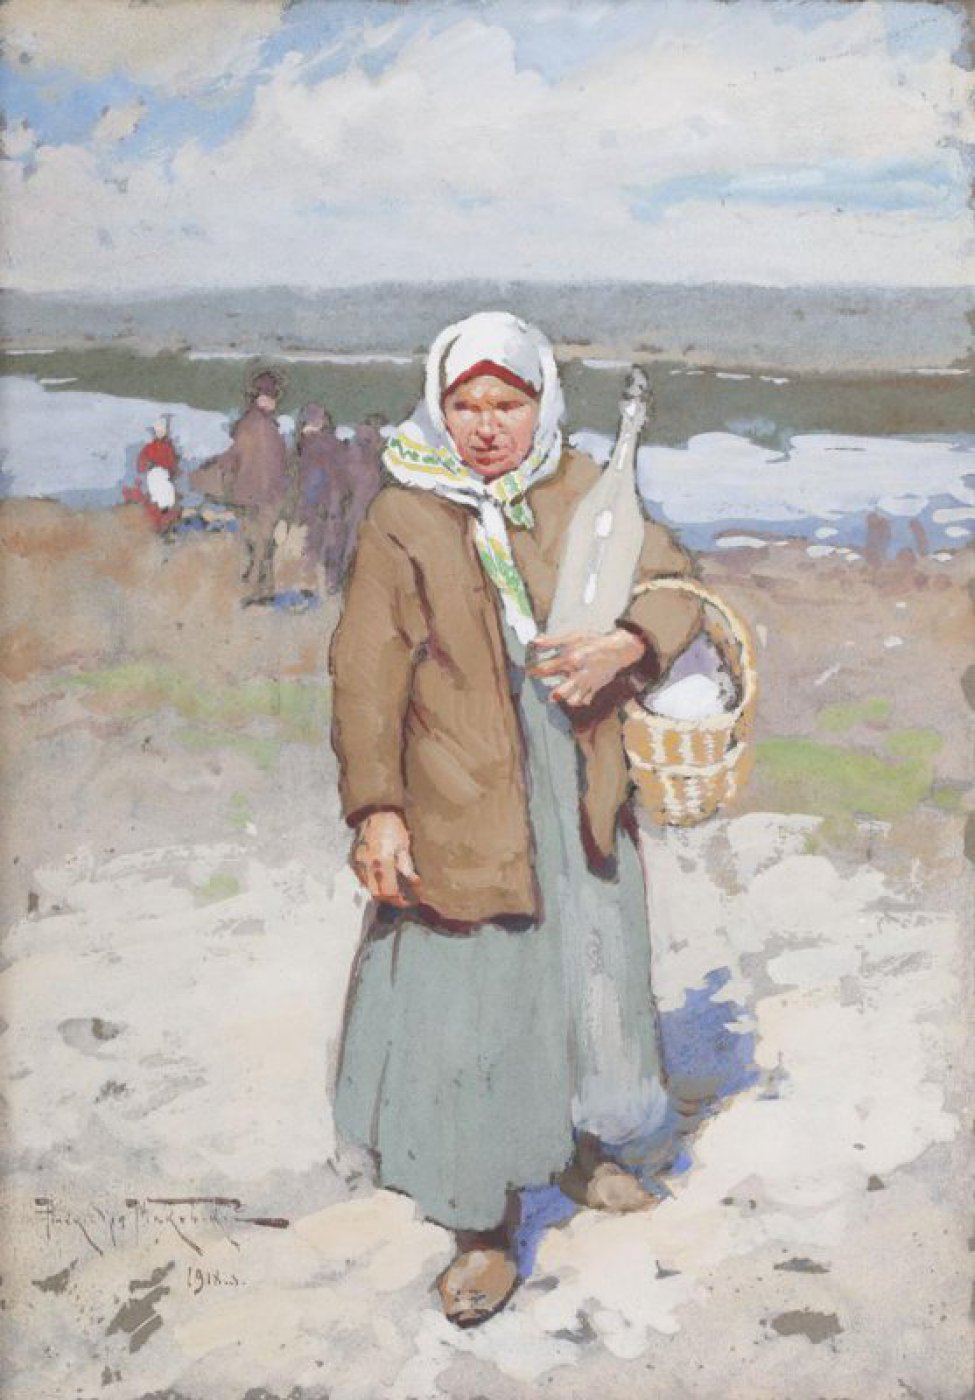 На фоне пейзажа с рекой изображена женщина с корзиной и бутылью в левой руке. Вдали слева видны фигуры людей.